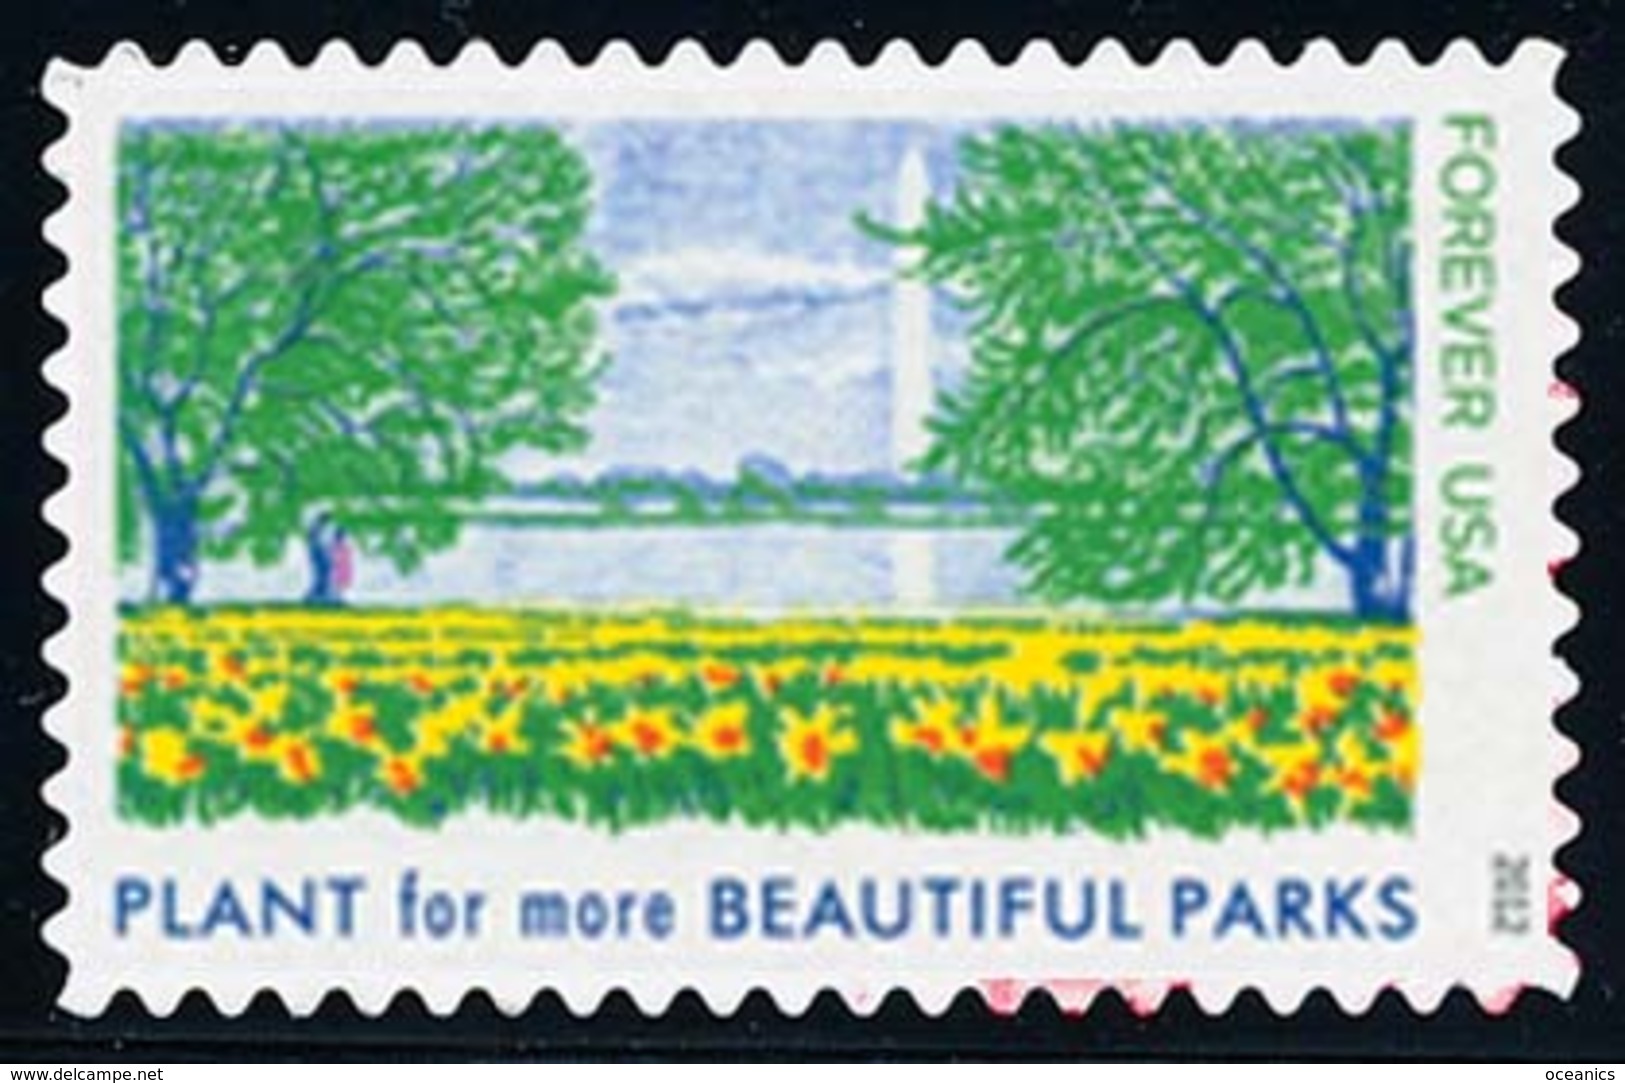 Etats-Unis / United States (Scott No.4716b - Lady Bird [set]) (o) P3 - Used Stamps